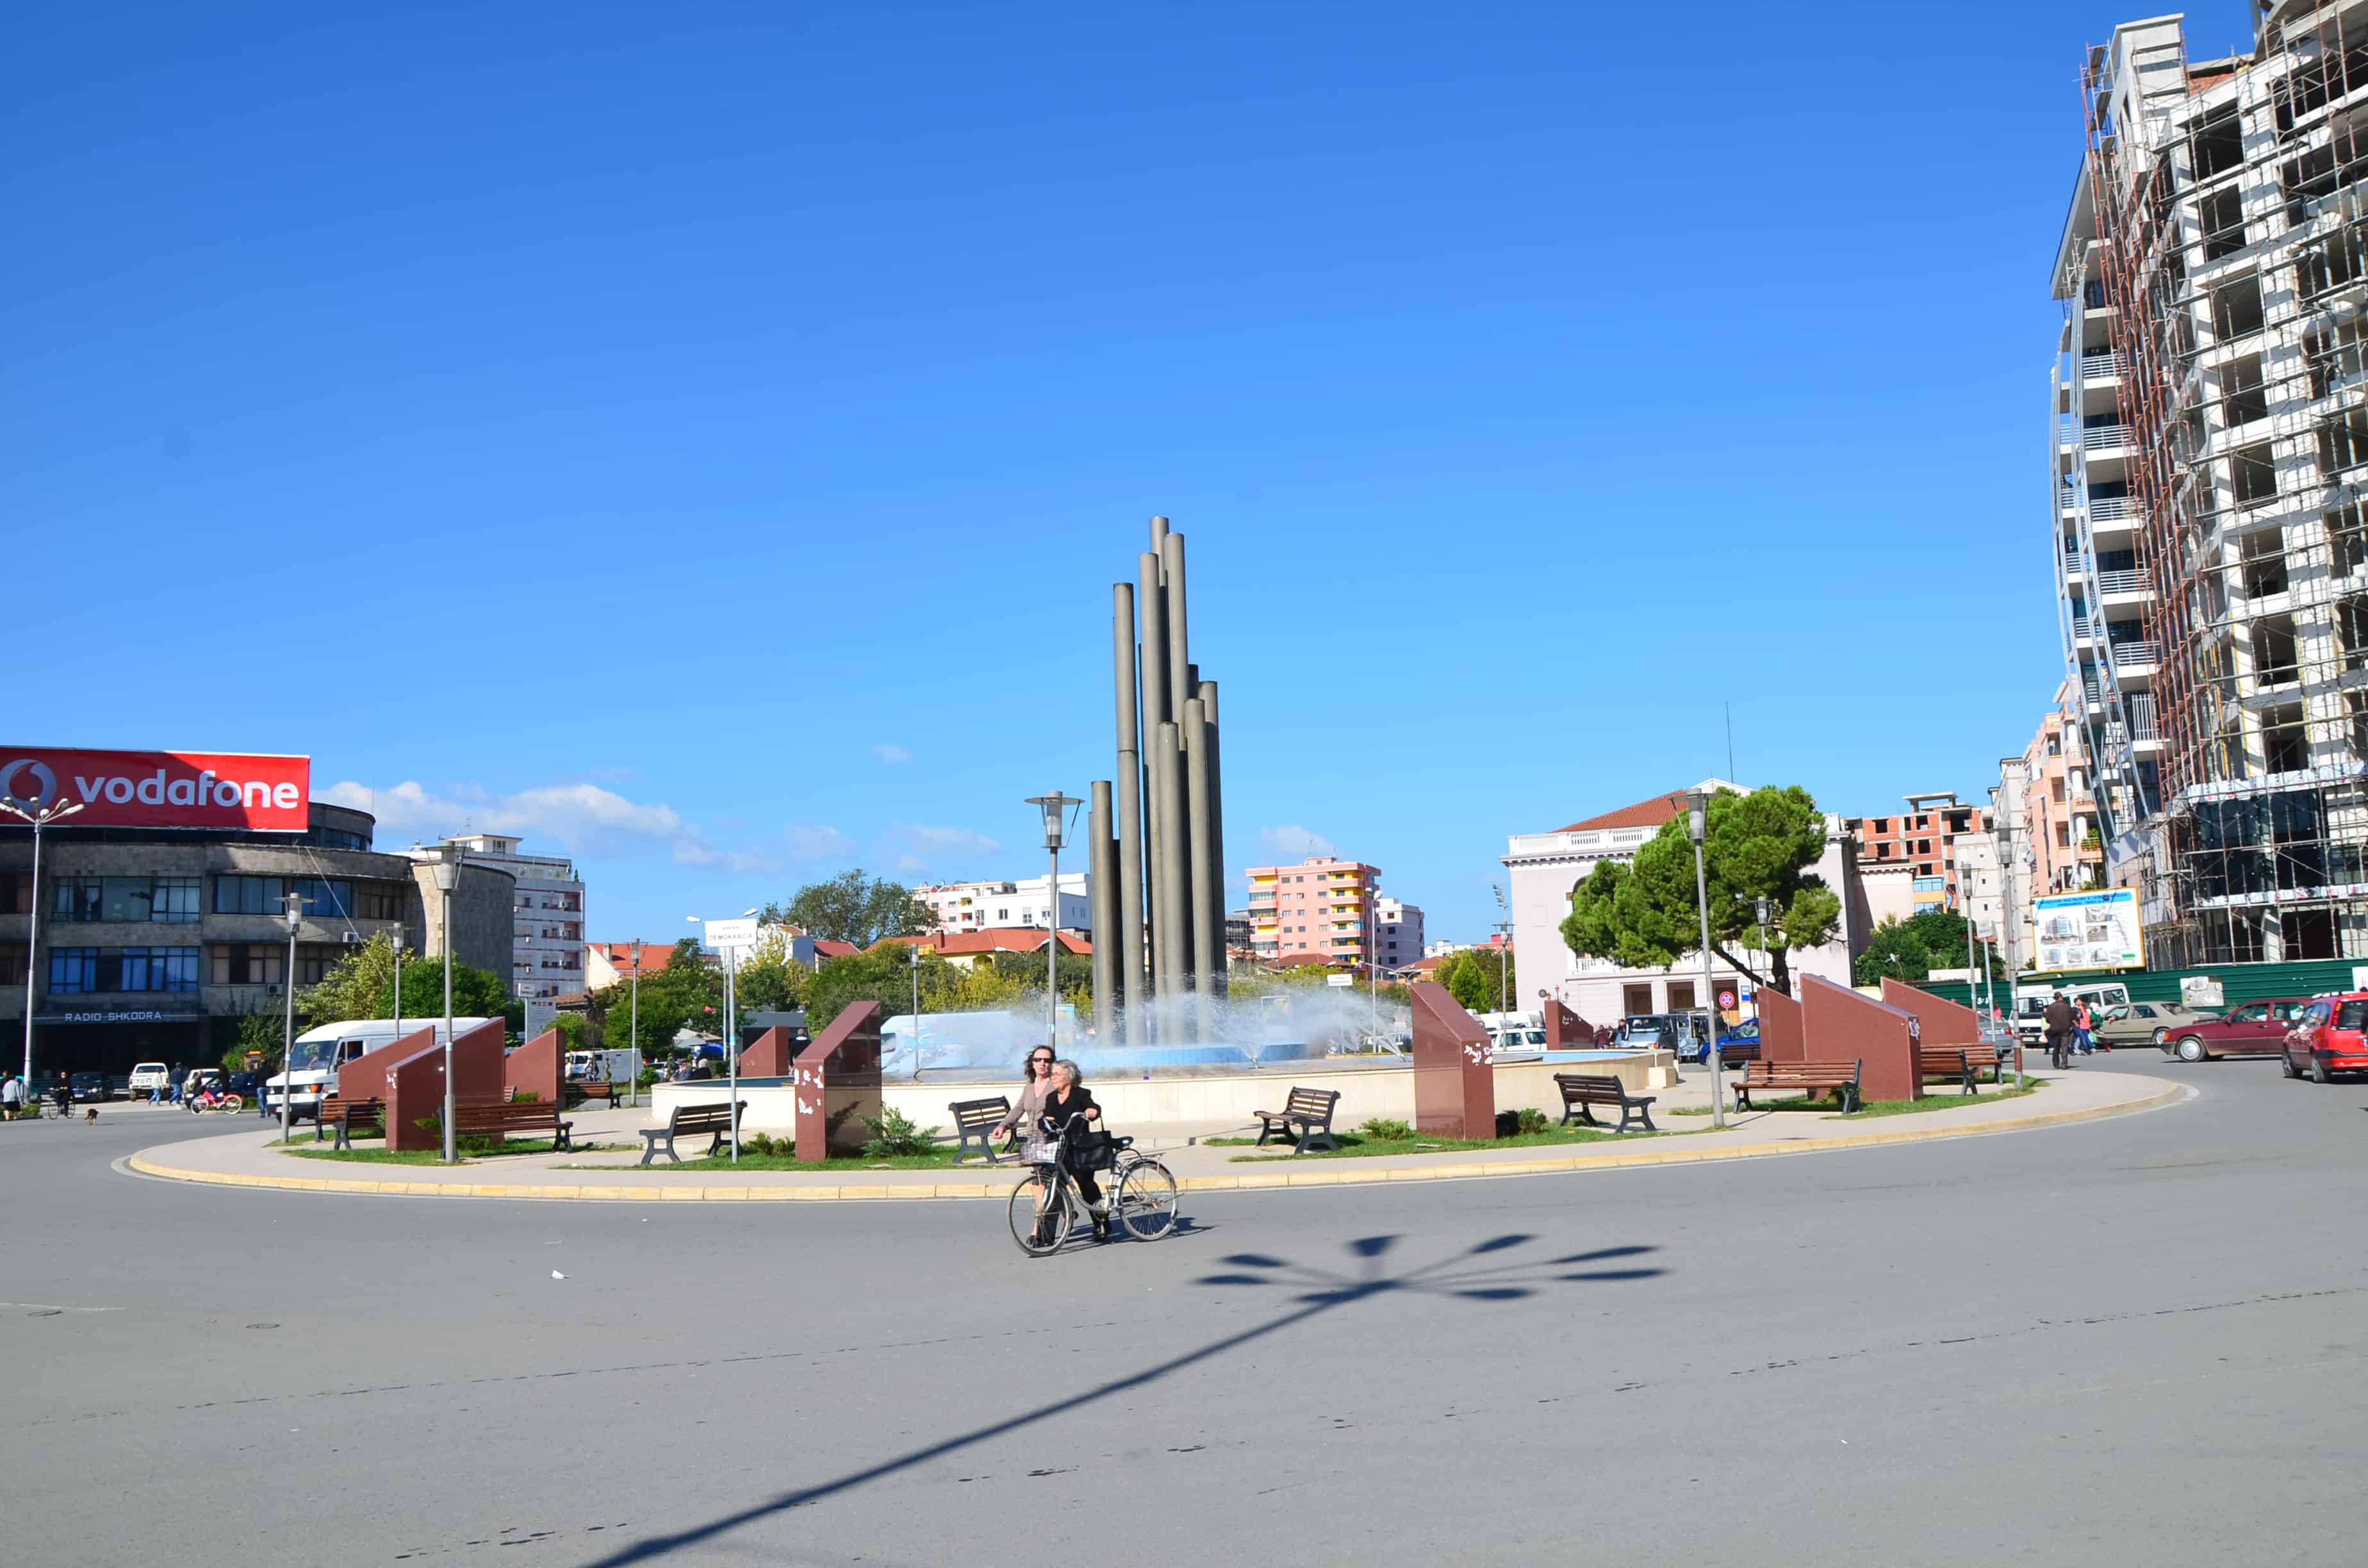 Democracy Square in Shkodër, Albania